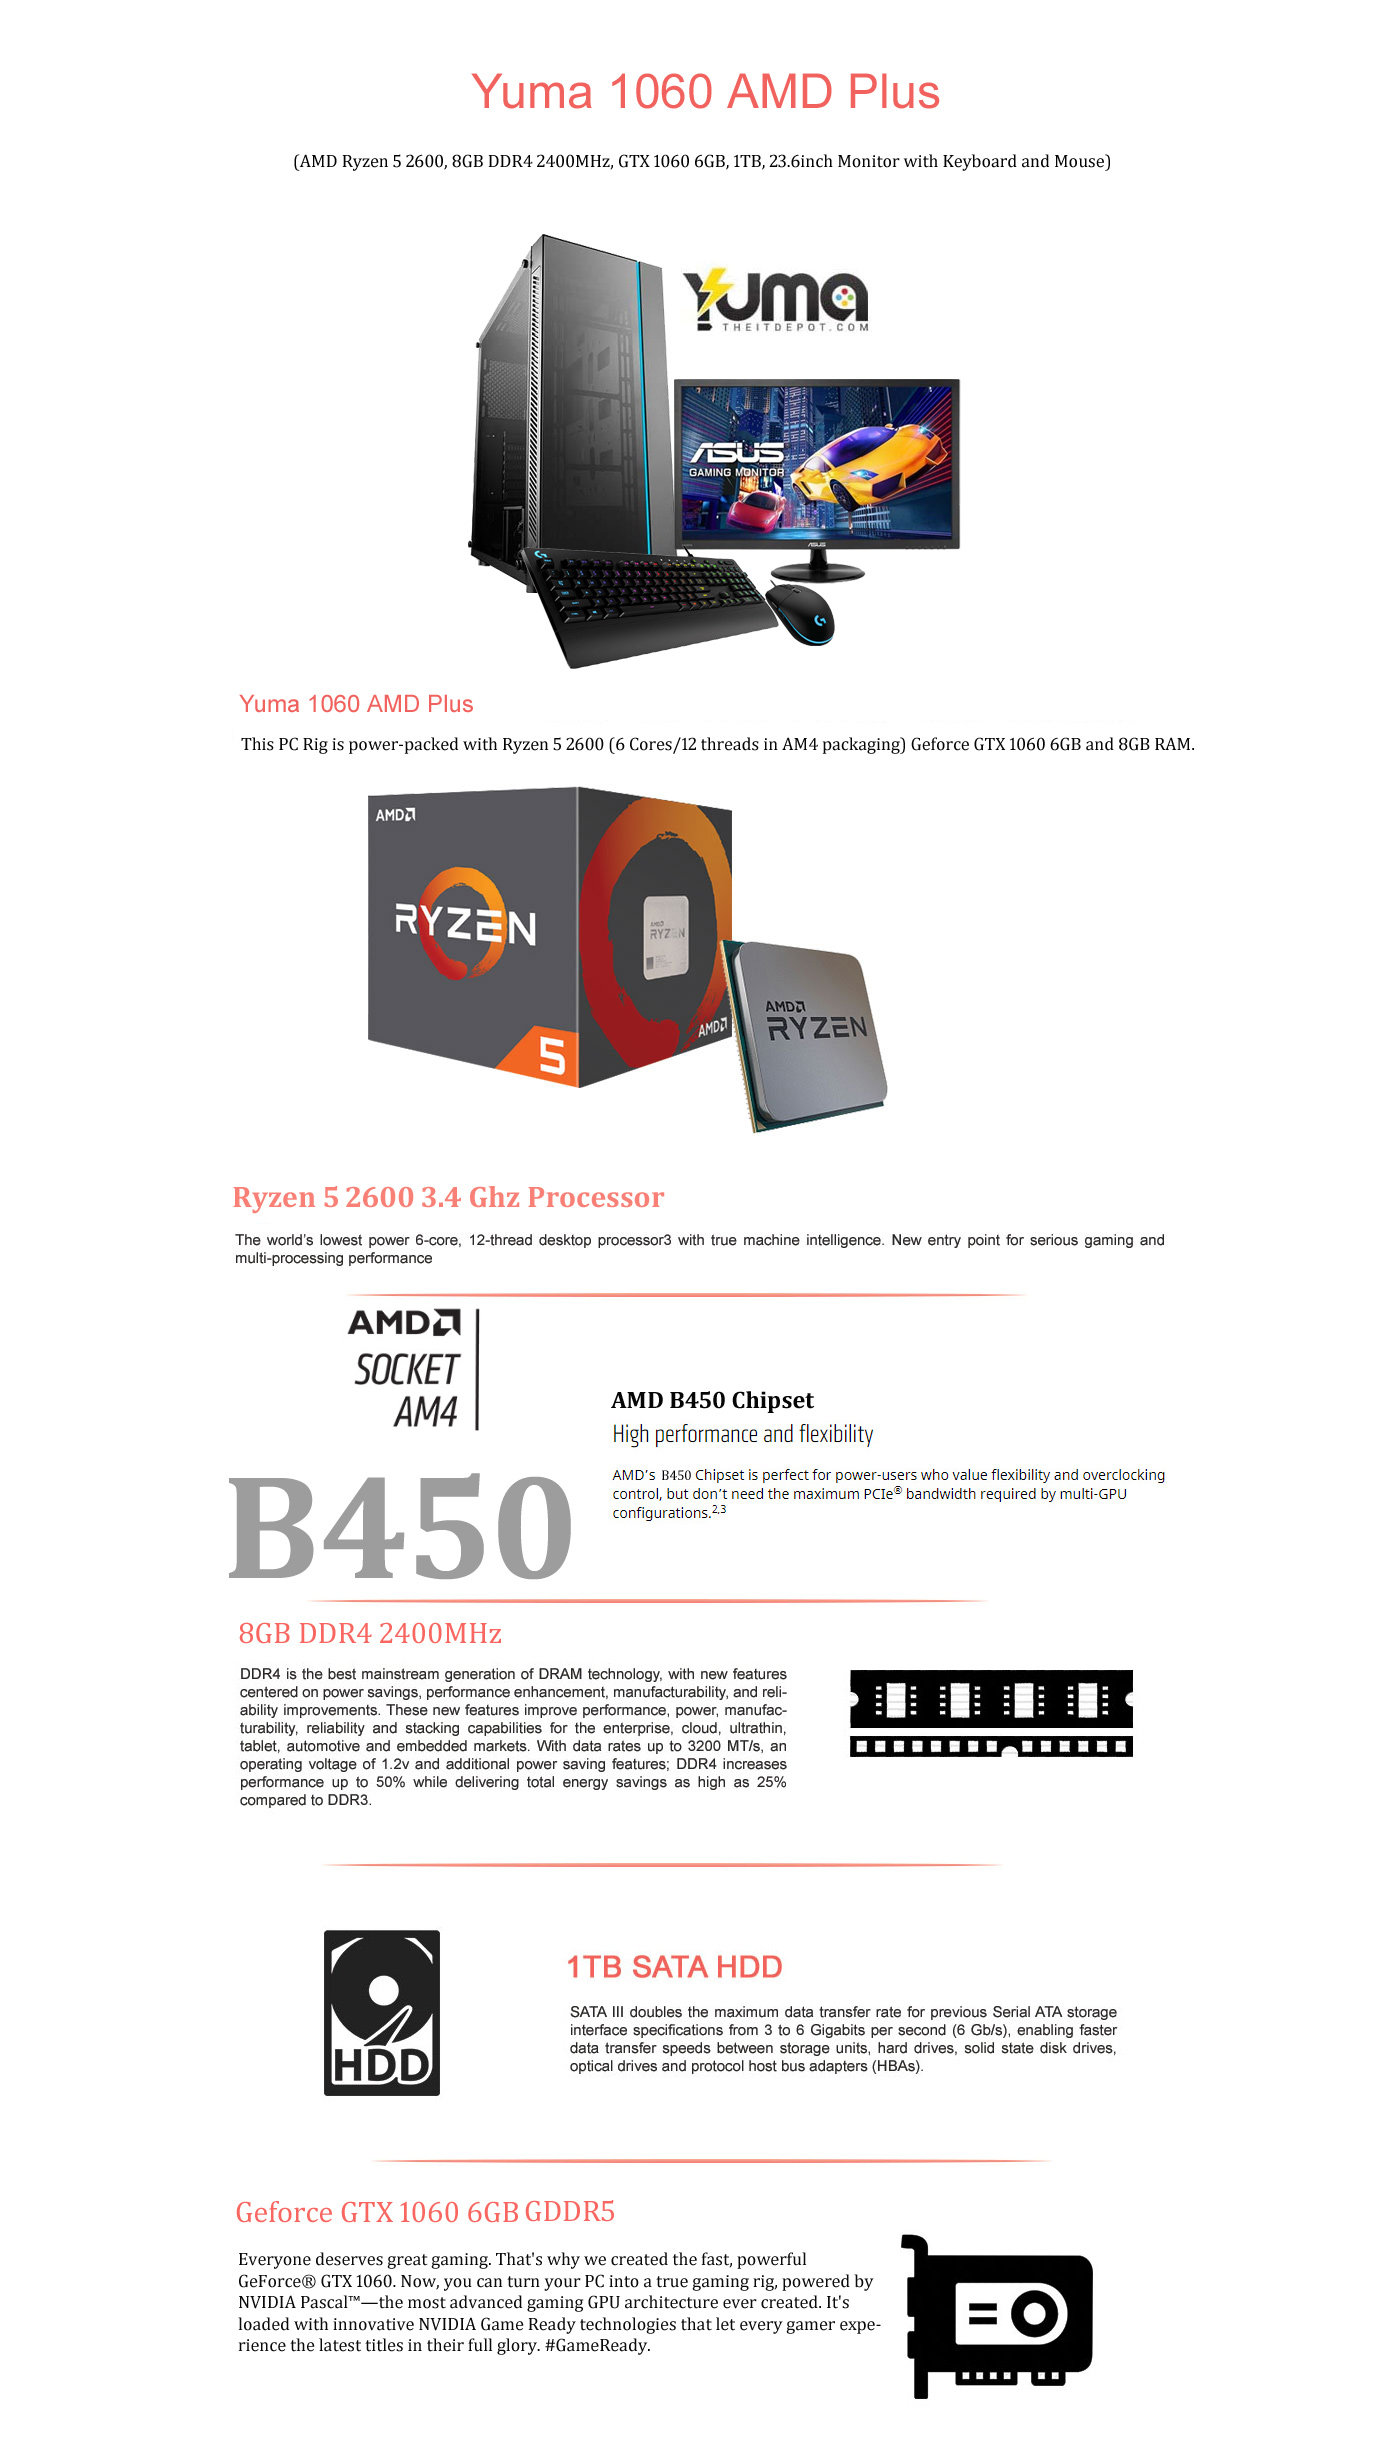  Buy Online Yuma 1060 AMD Plus (AMD Ryzen 5 2600, 8GB DDR4 2400MHz,GTX 1060 6GB, 1TB, 23.6inch Monitor with Keyboard and Mouse)